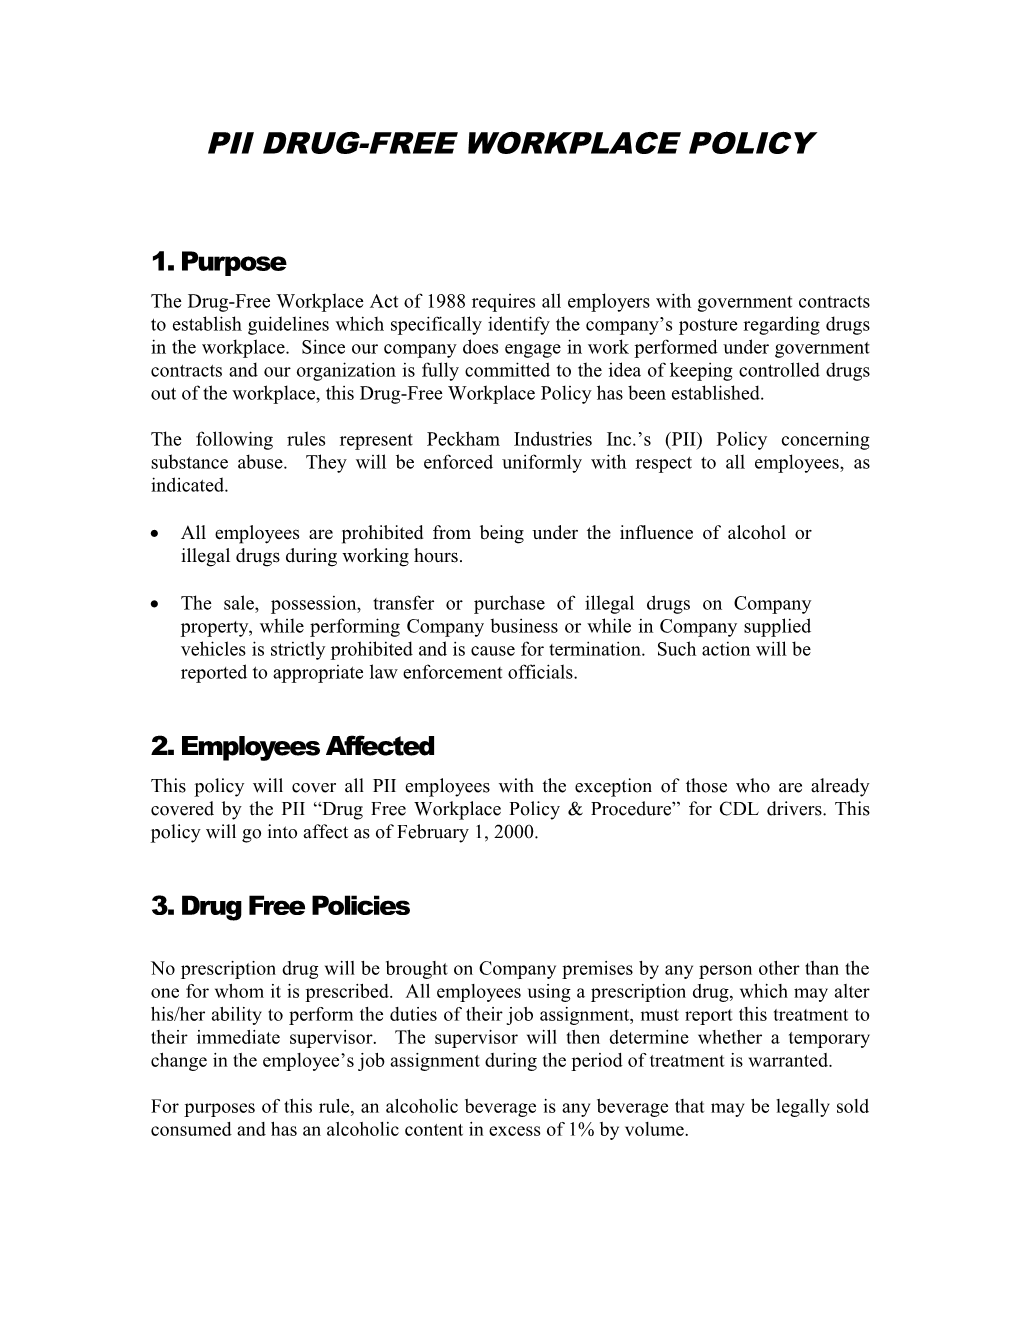 Pii Drug-Free Workplace Policy